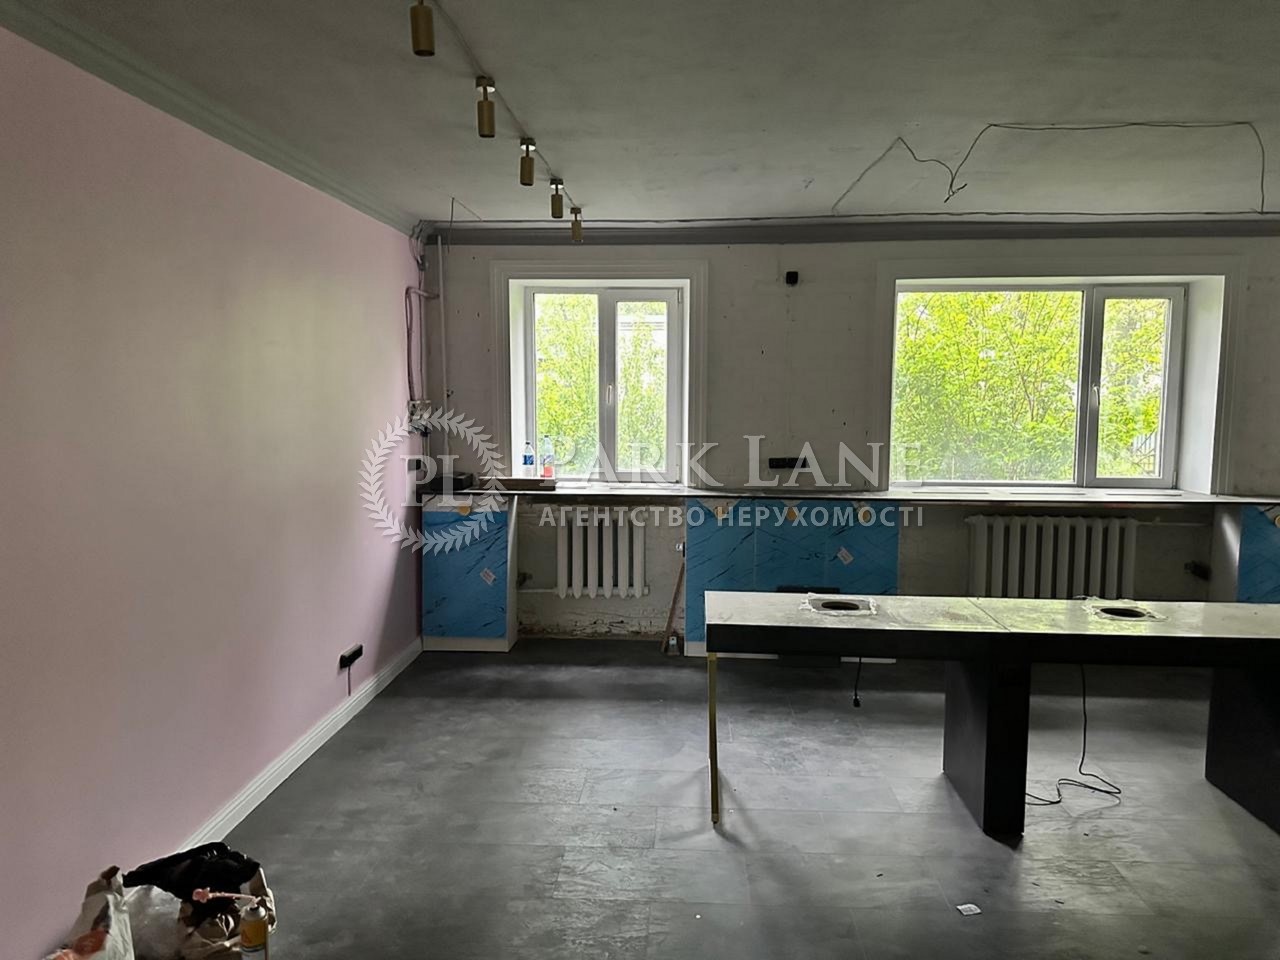  Нежилое помещение, J-35772, Головко Андрея, Киев - Фото 4